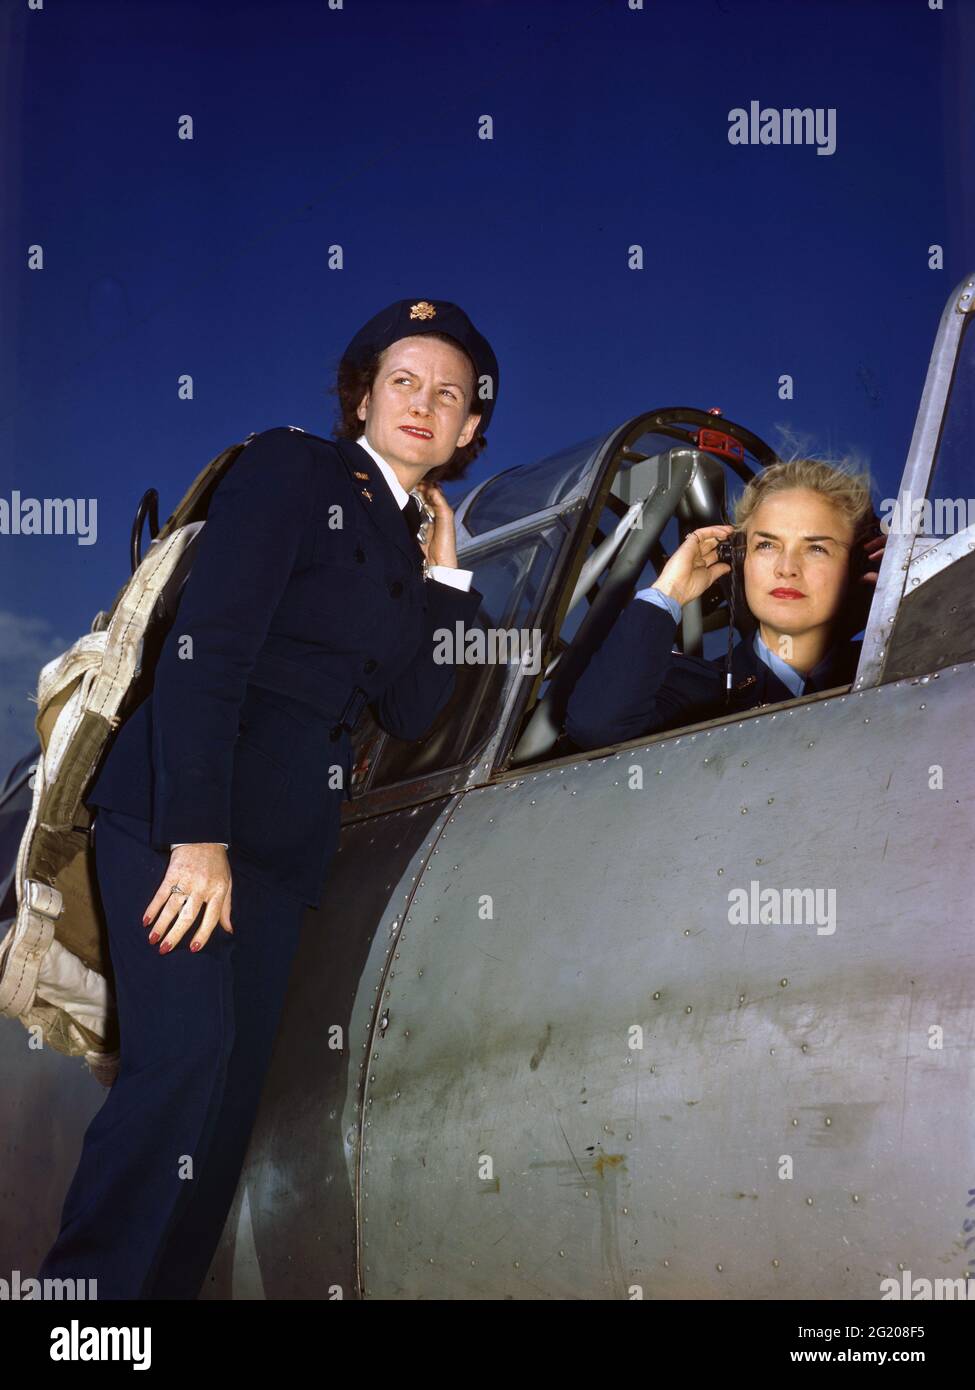 Anne McClellan, die Luftwaffenpilotin der Frauen, passt ihre Kopfhörer im Cockpit eines BT-13 an, während Ann Johnson um 1944 auf dem Flügel des Flugzeugs ohne Standort steht. (Foto der US Army Air Force/RBM Vintage Images) Stockfoto